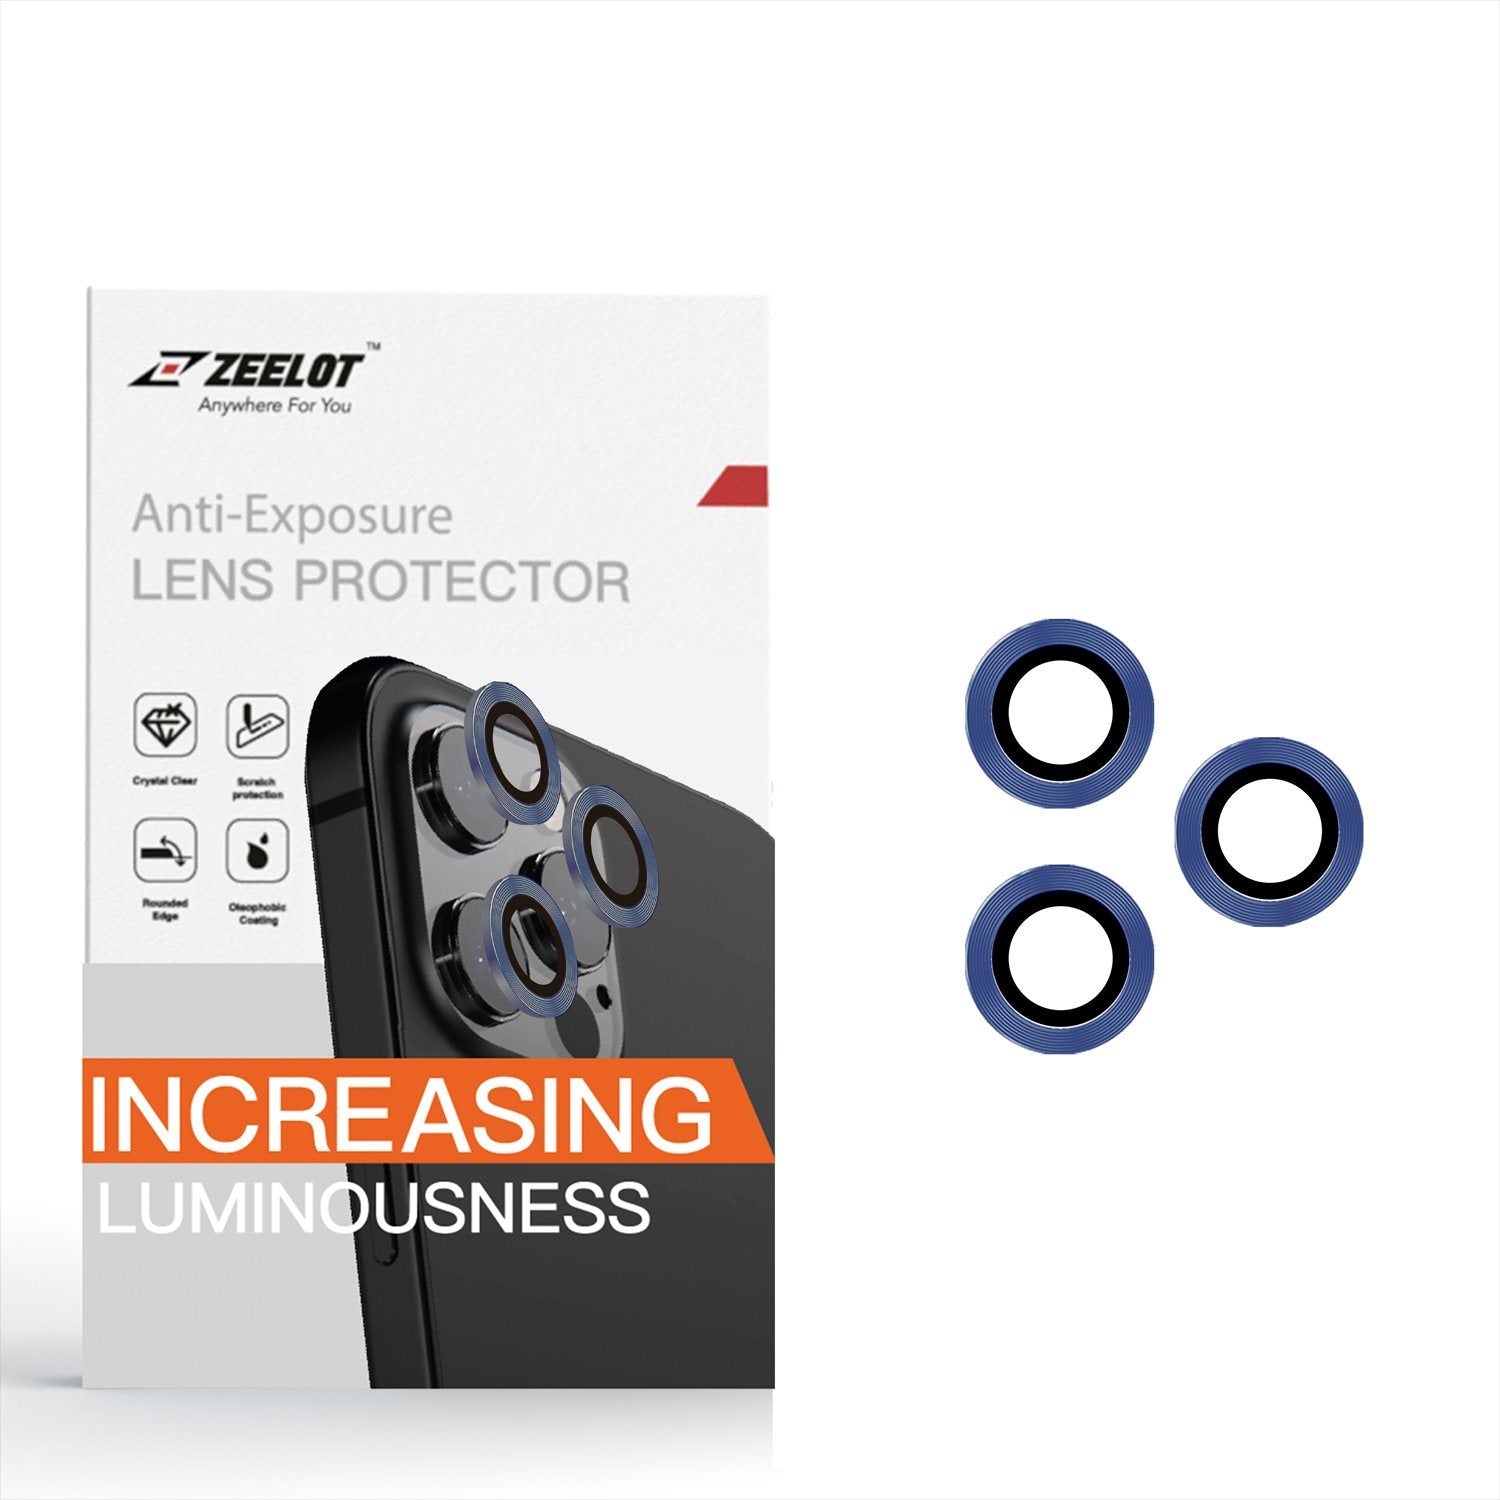 ZEELOT Titanium Steel with Lens Protector for iPhone 11 Pro 5.8"/11 Pro Max 6.5", Navy Blue Default ZEELOT 